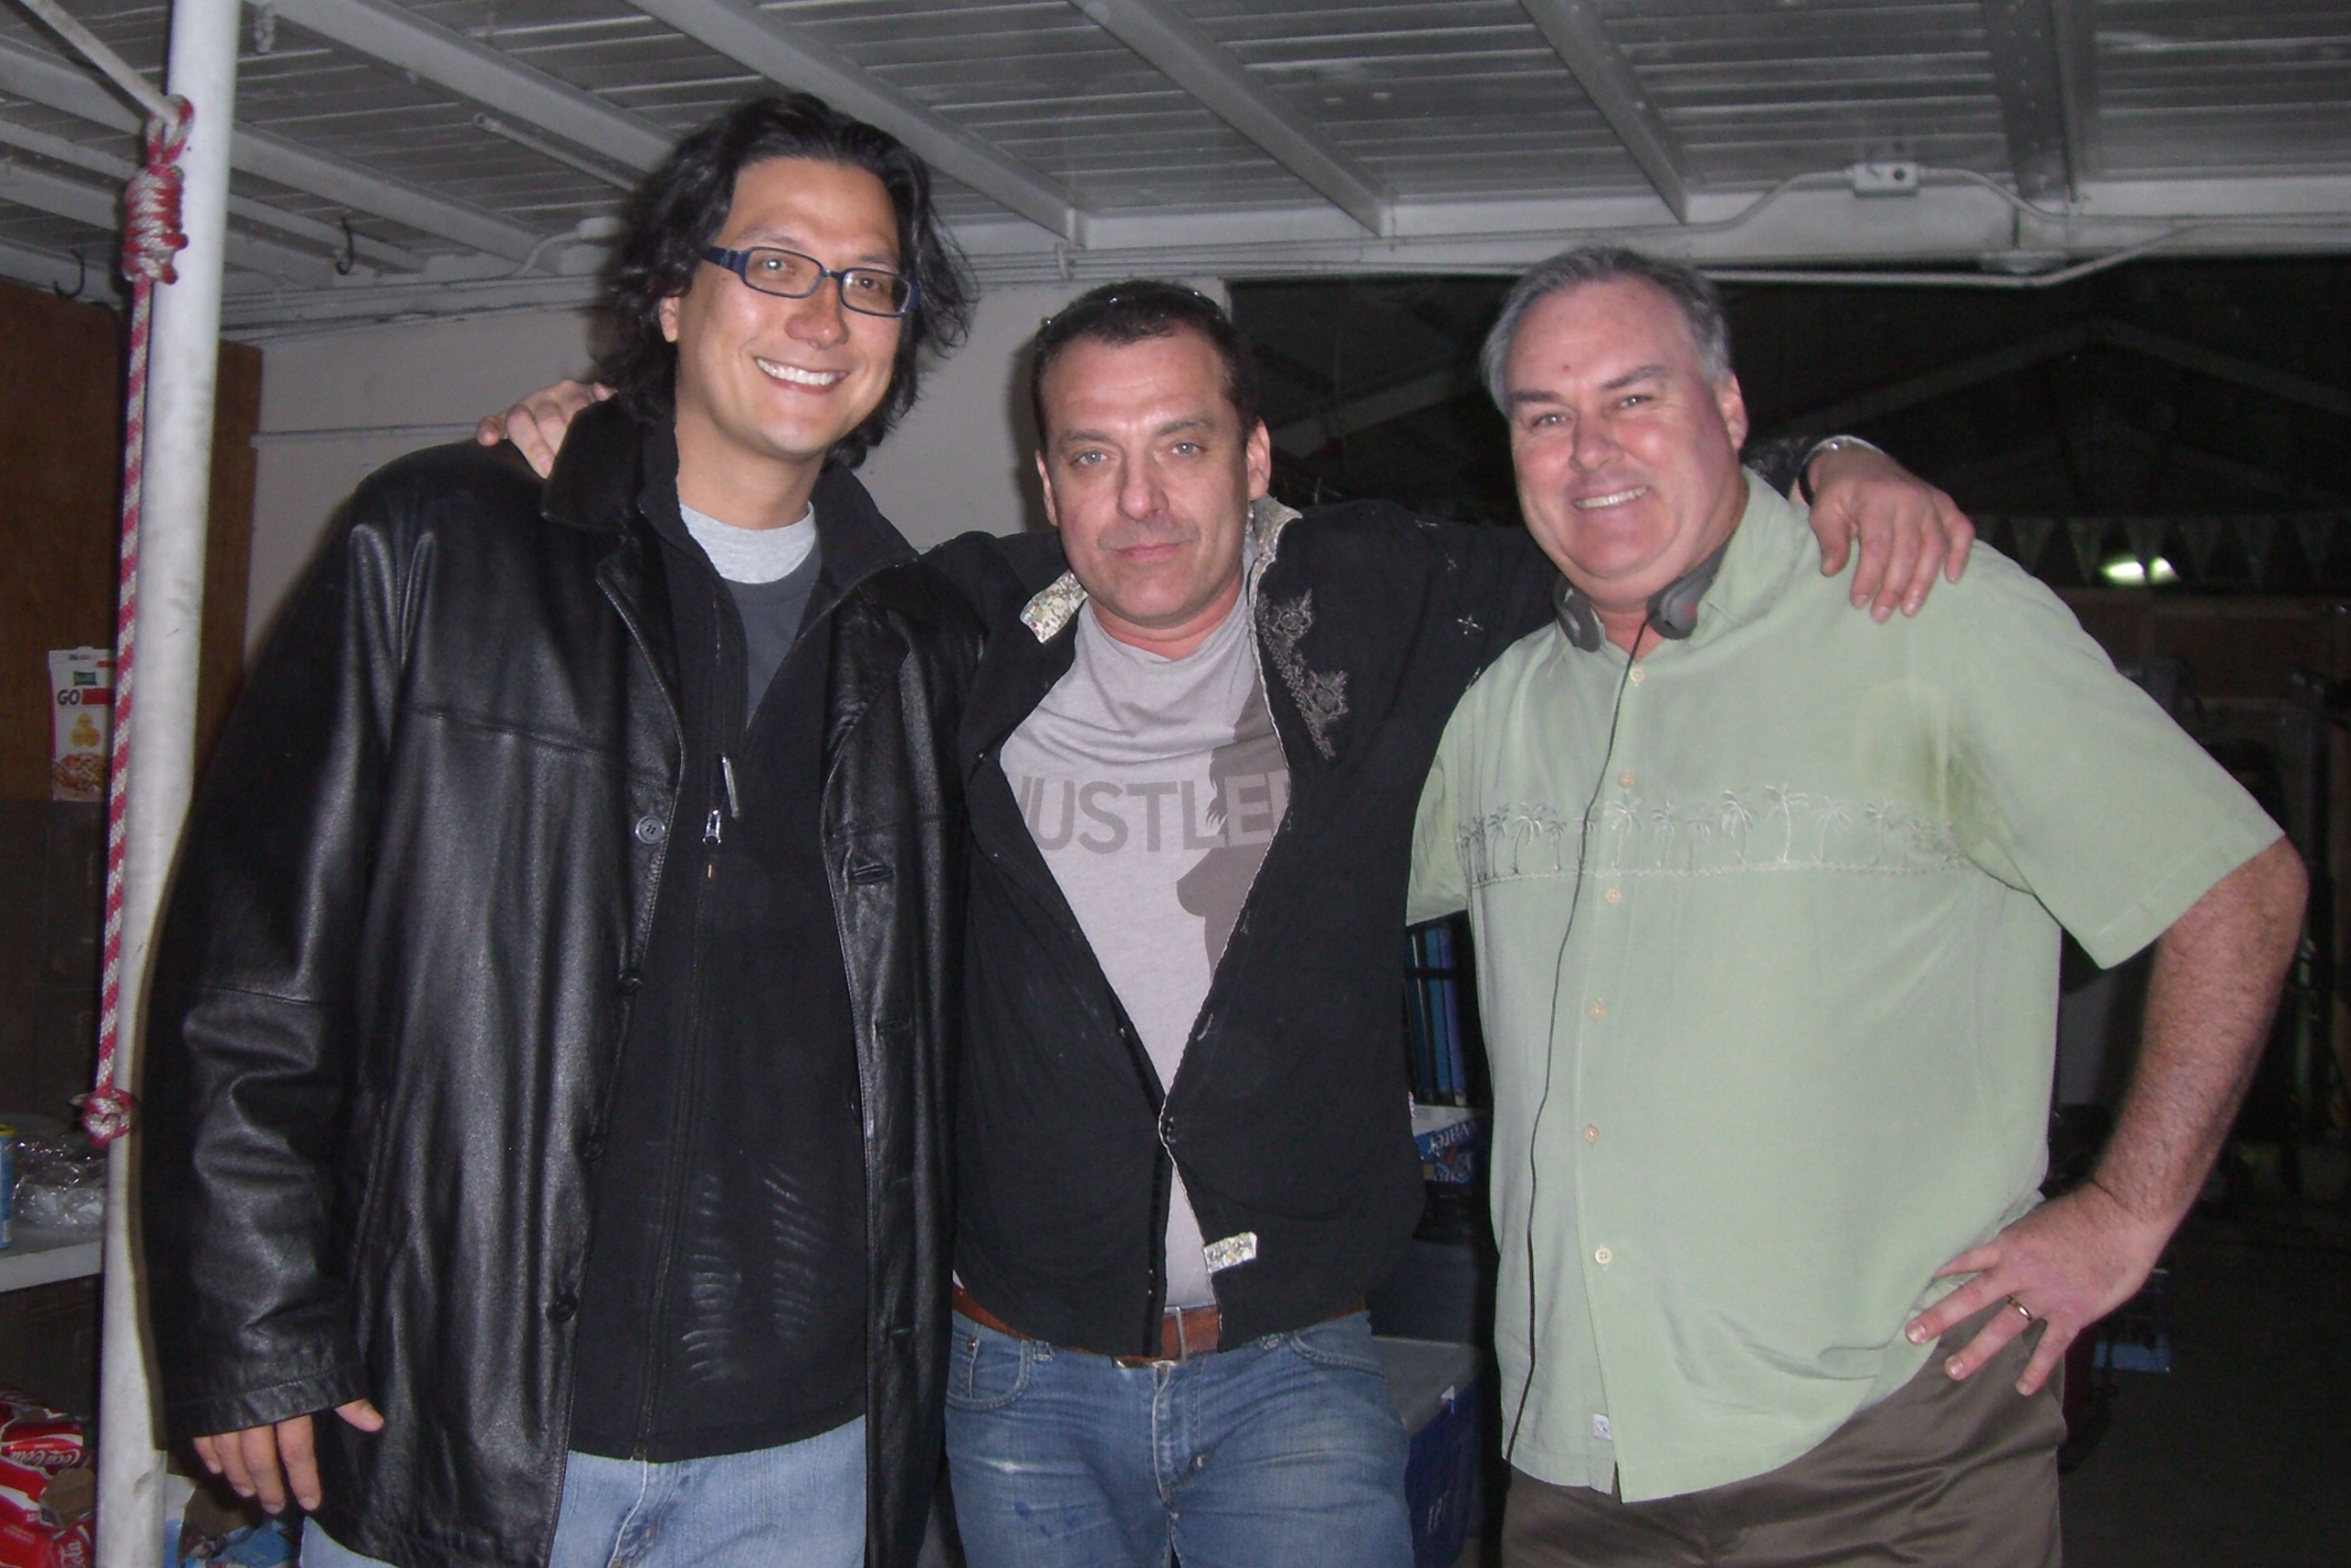 Robert Enriquez, Tom Sizemore, John Millea 2008